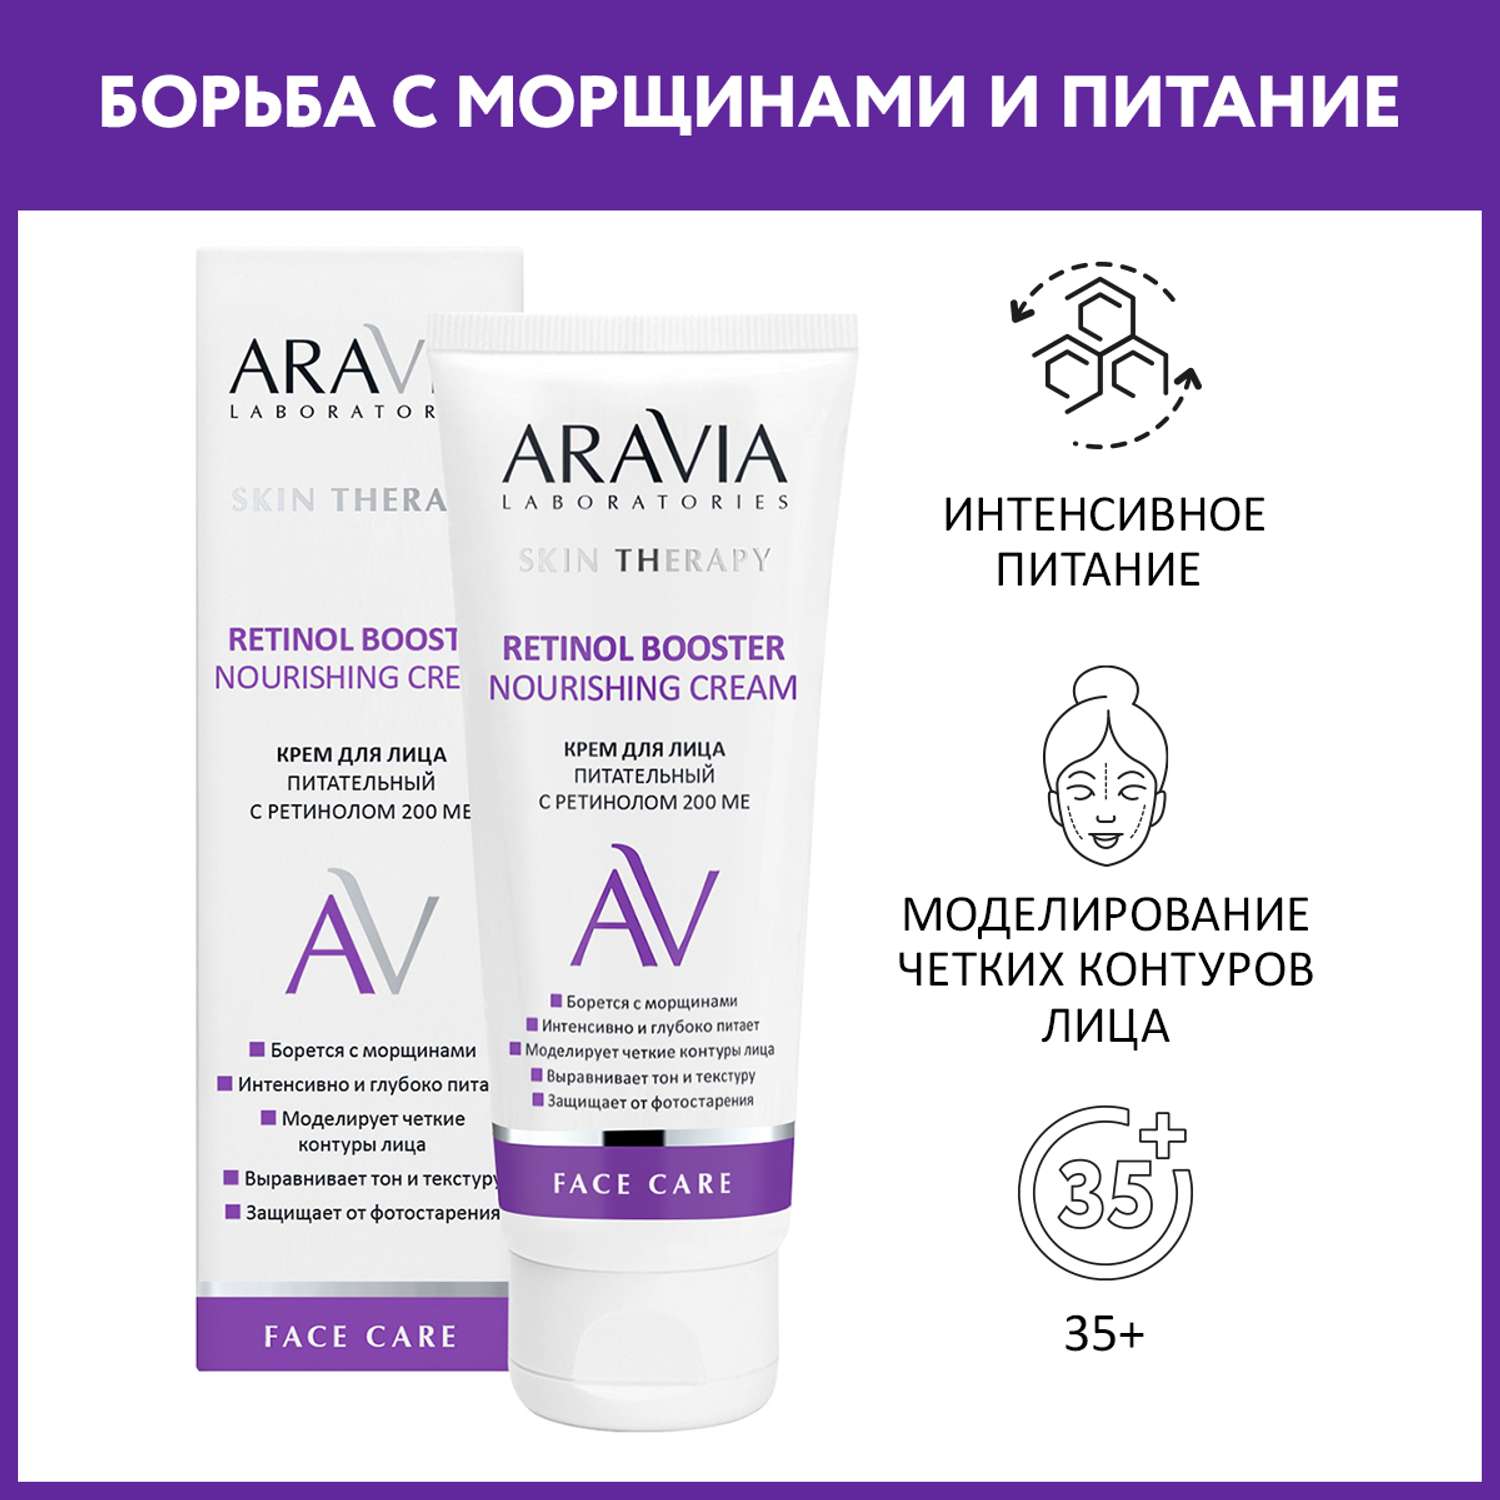 Крем для лица ARAVIA Laboratories питательный с ретинолом 200 МЕ Retinol Booster Nourishing Cream 50 мл - фото 1